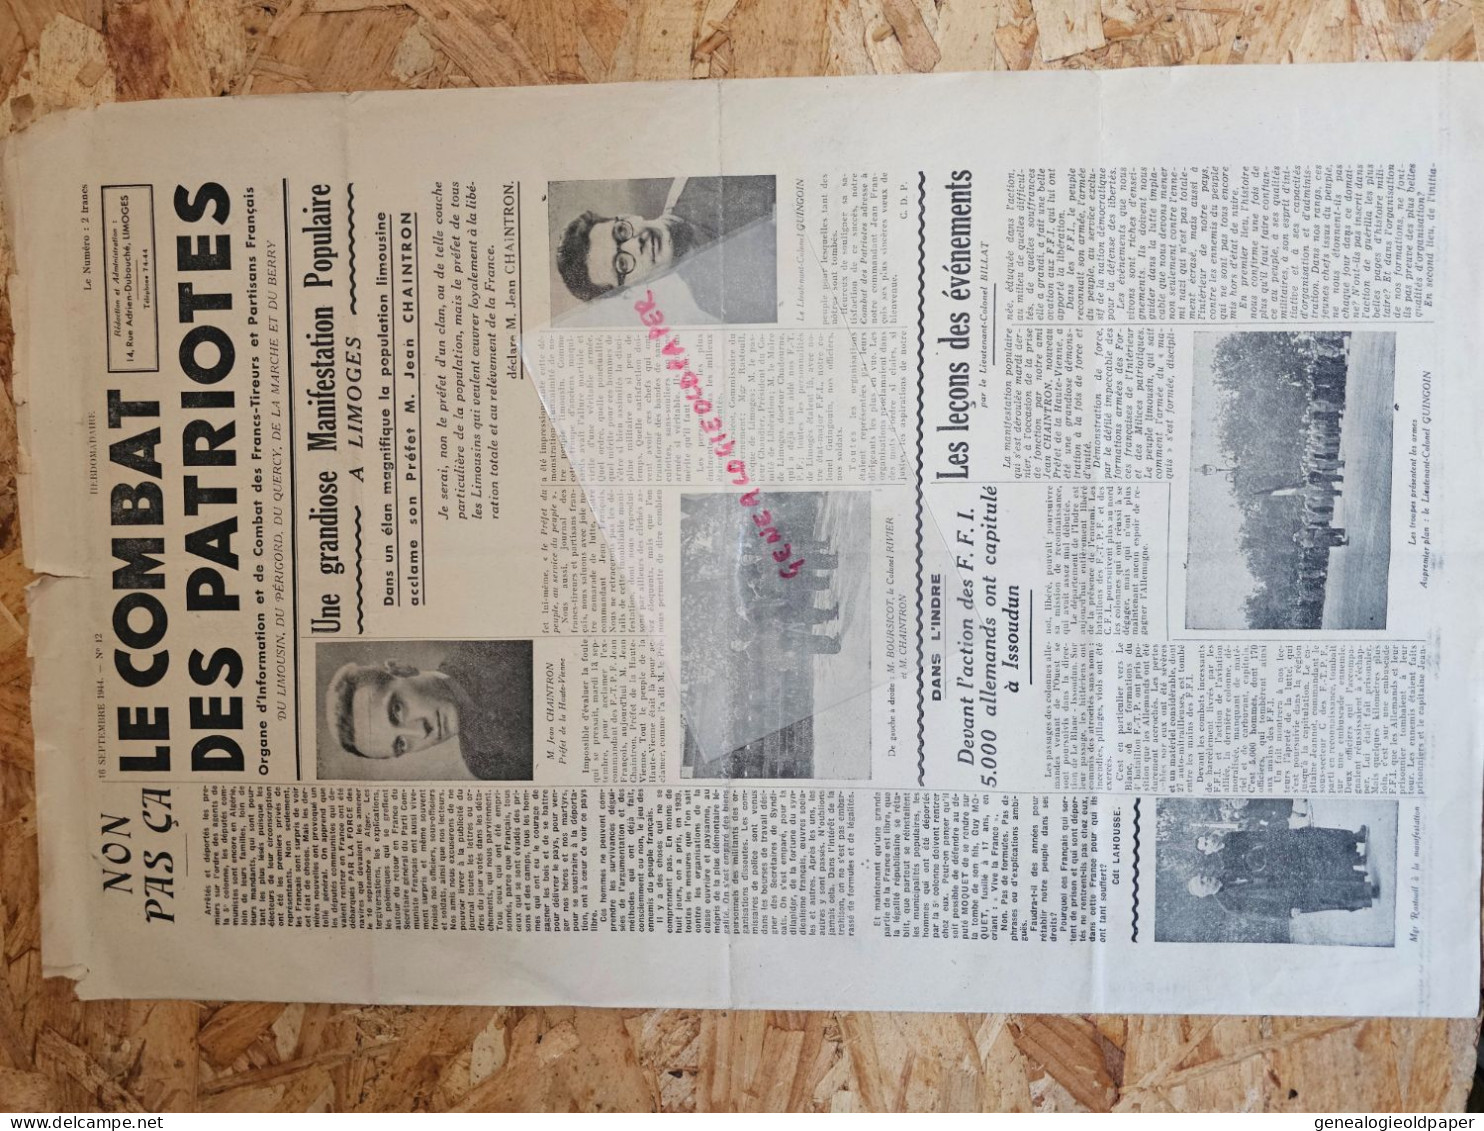 87-LIMOGES- COMBAT DES PATRIOTES-16 -9-1944-JEAN CHAINTRON PREFET-GUINGOUIN-BOURSICOT-RESISTANCE FFI-CHADOURNE-ISSOUDUN - Documentos Históricos